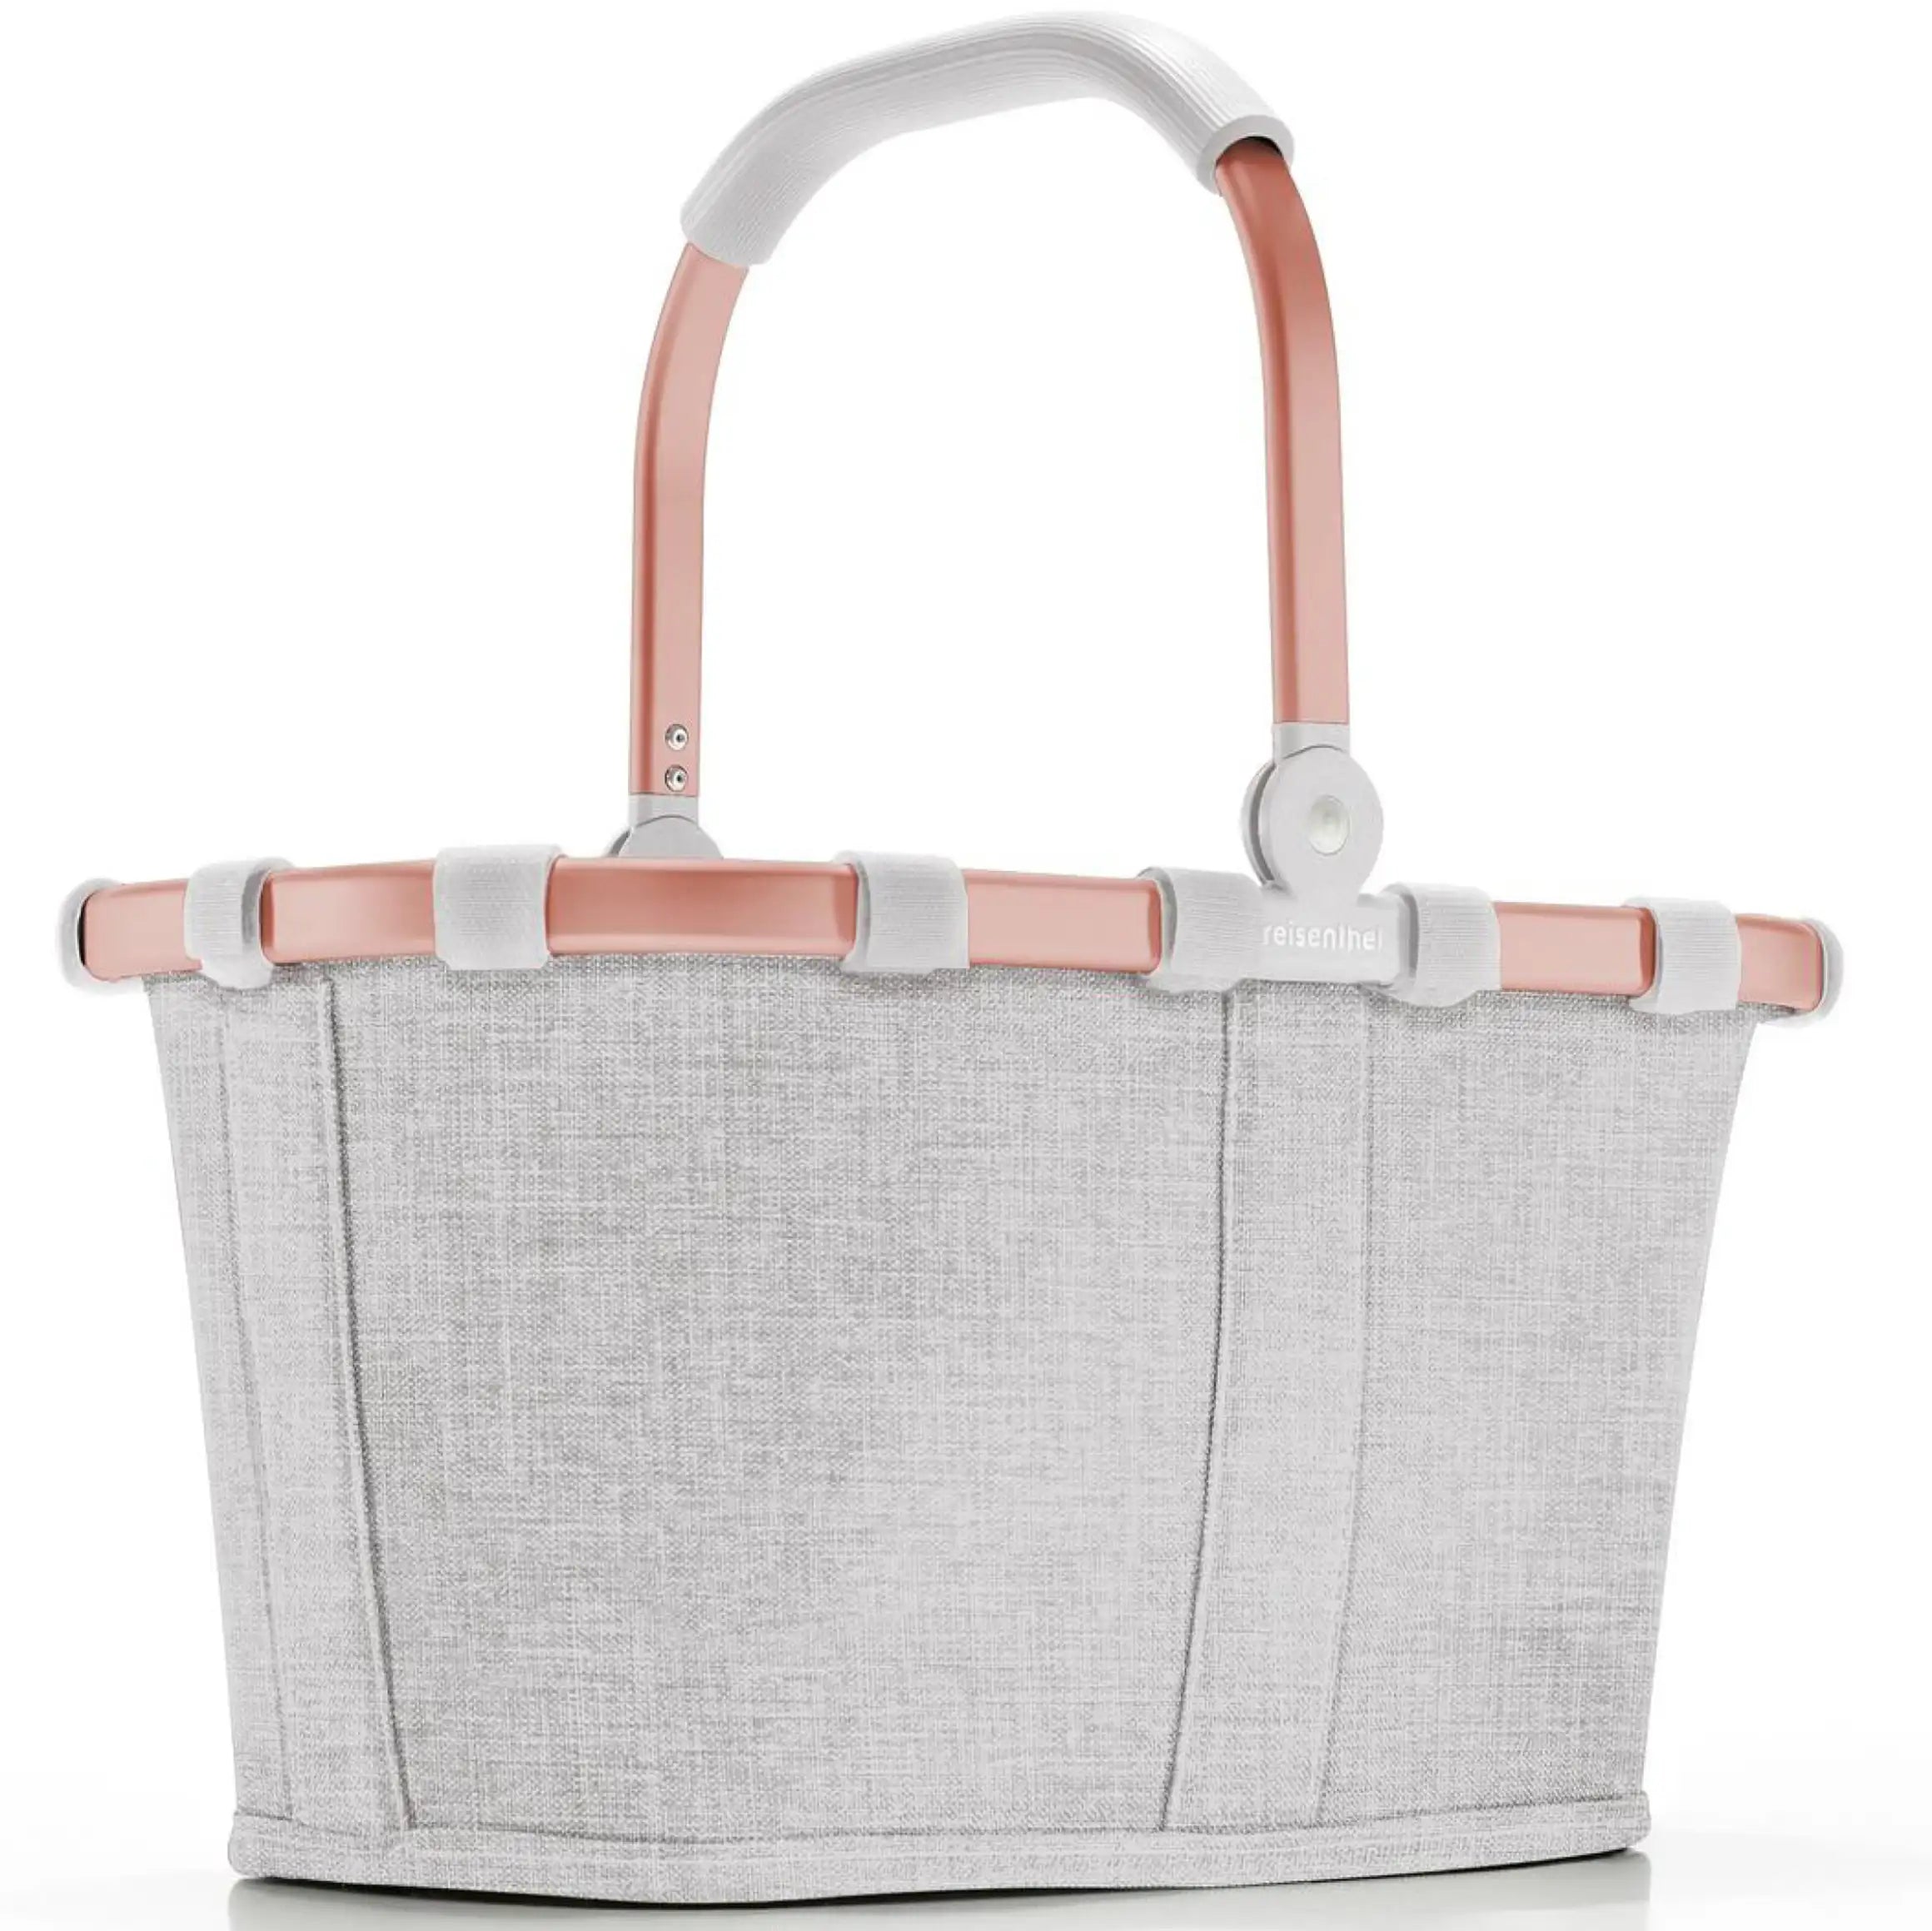 Reisenthel Shopping Carrybag XS children's shopping basket 33 cm - Frame Twist Sky Rose